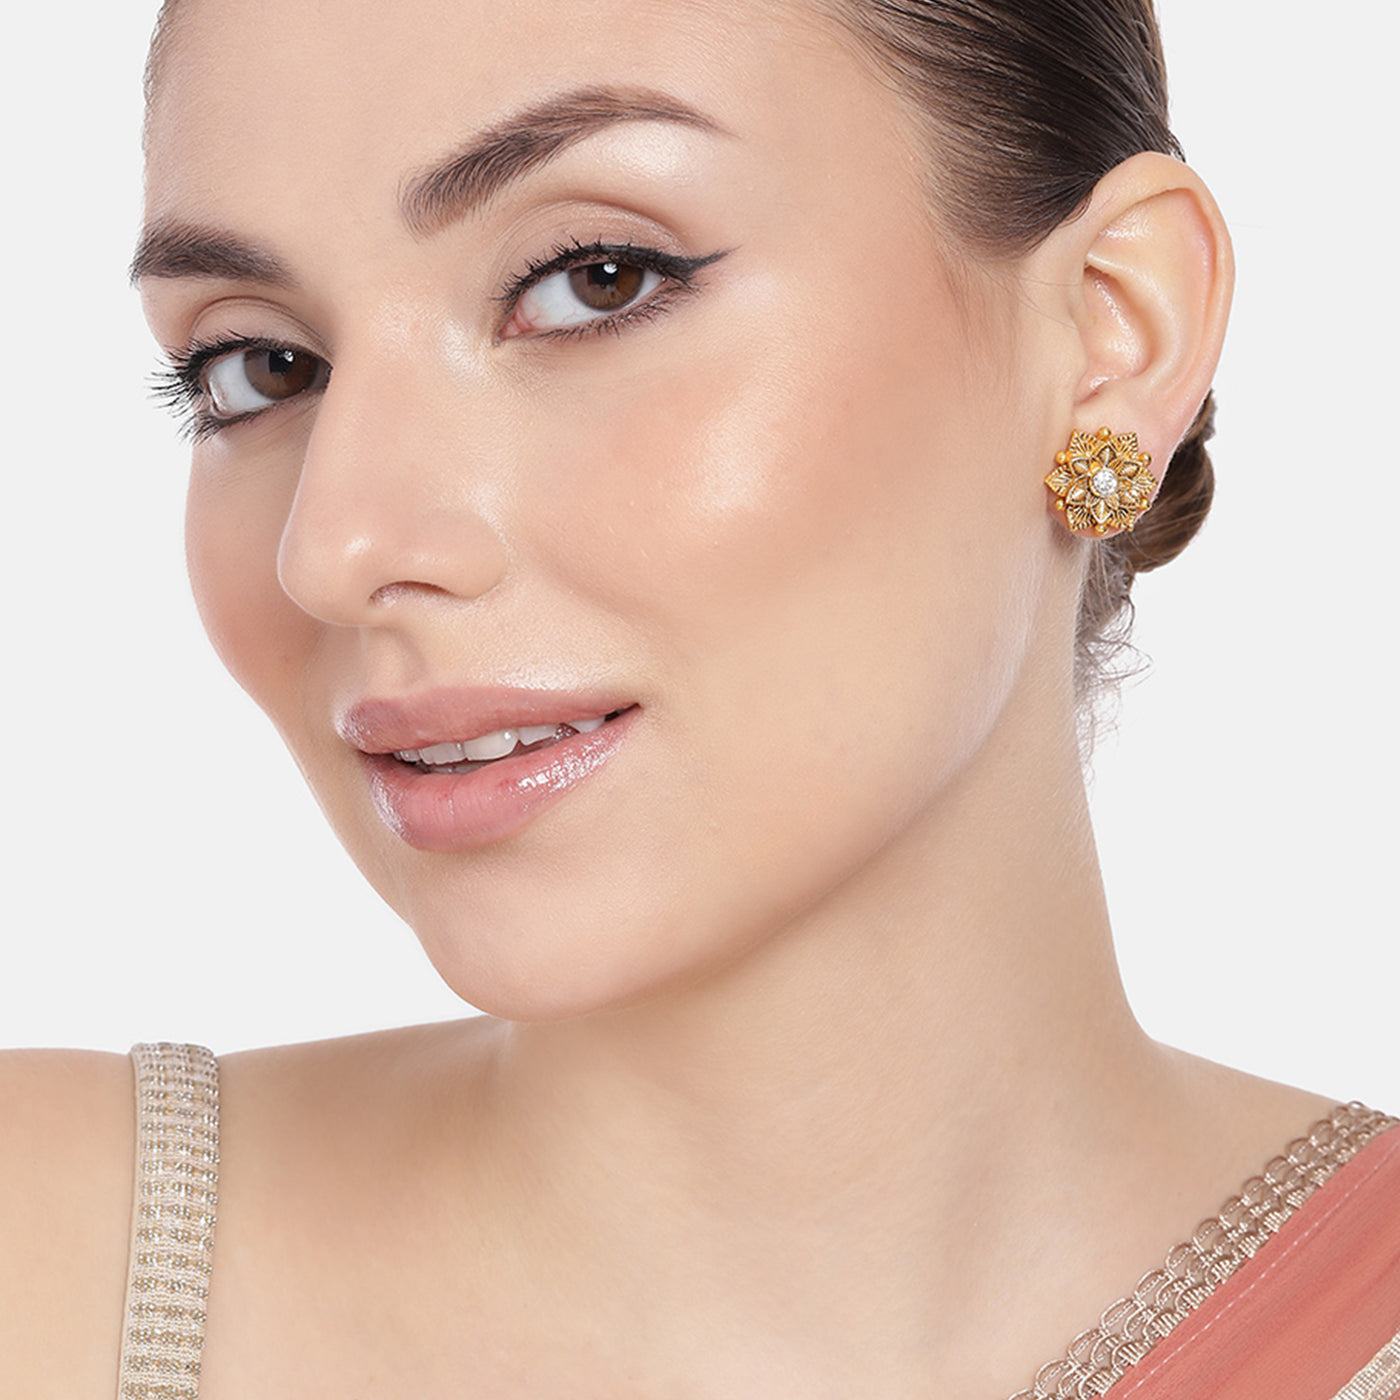 Estele Gold Plated Flower Designer Matt Finish Stud Earrings with White Crystals for Women